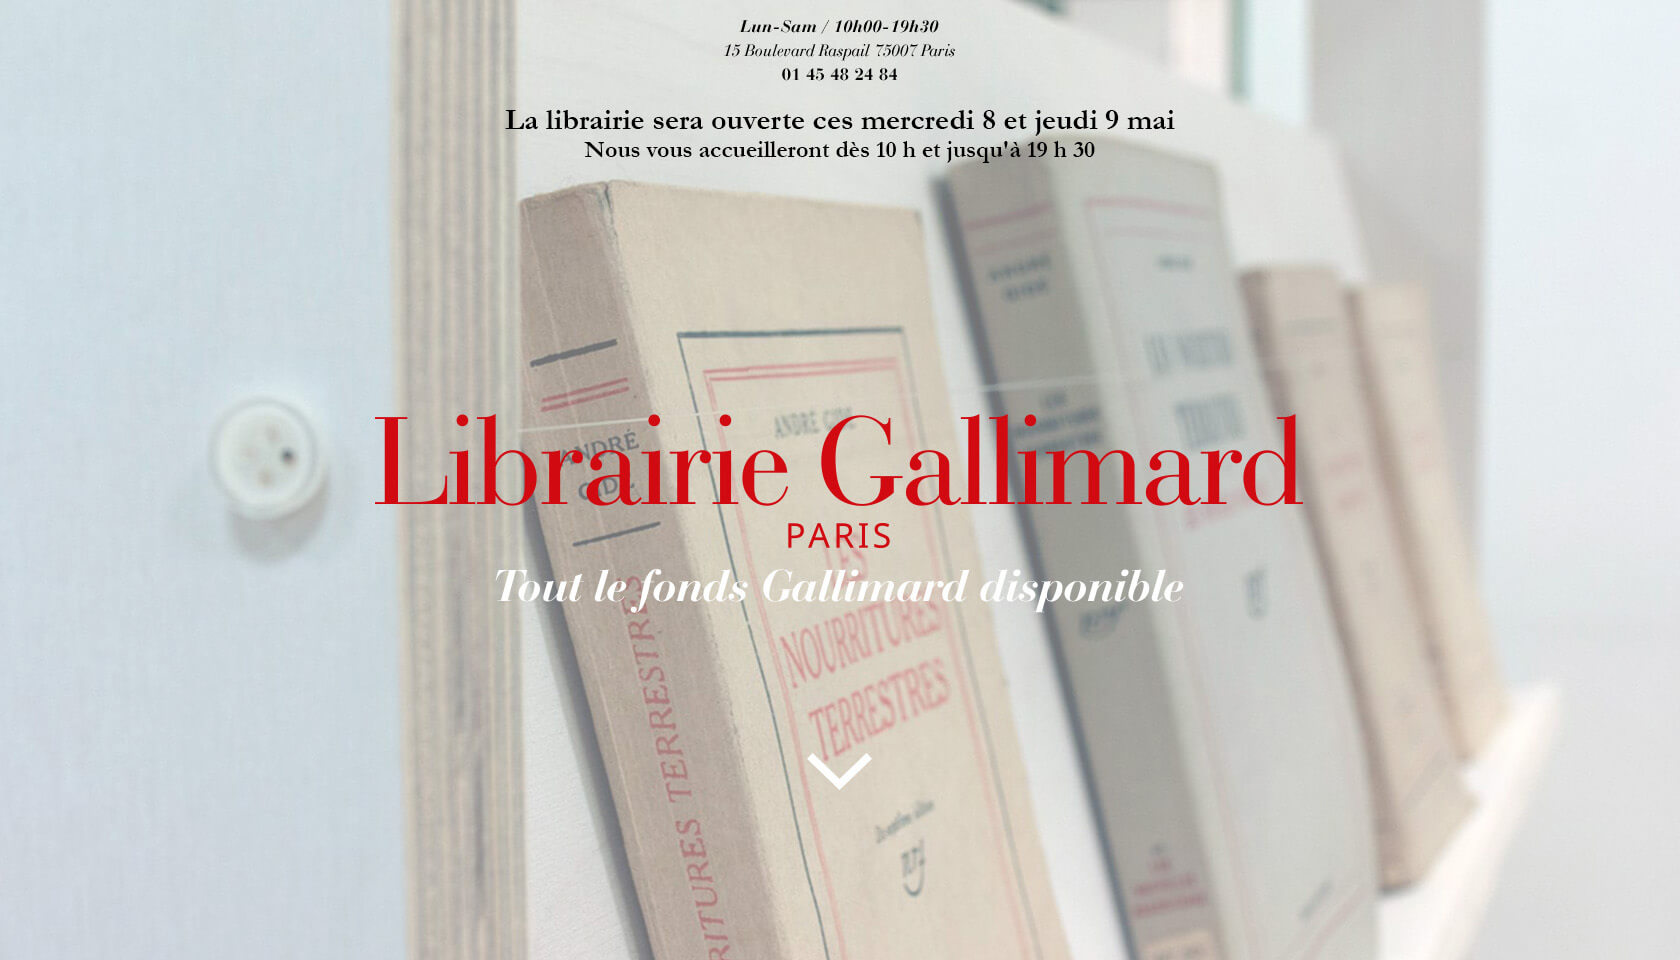 Librairie Gallimard, Tout le fonds disponible